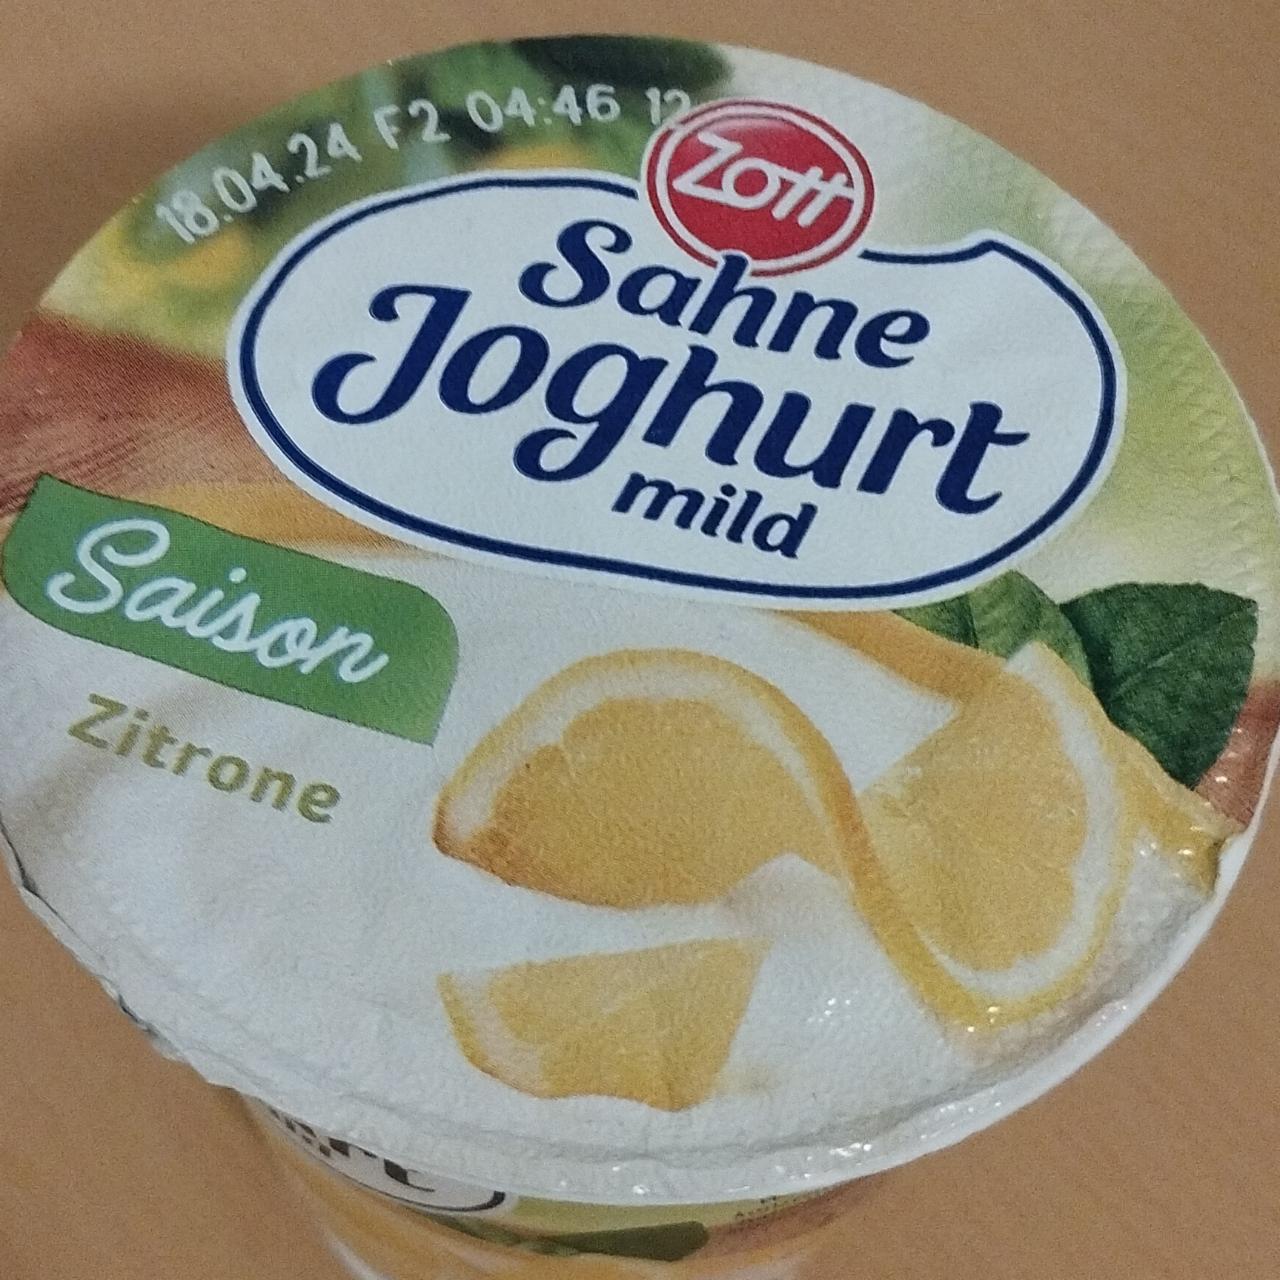 Zdjęcia - Sahne Joghurt mild Saison Zitrone Zott